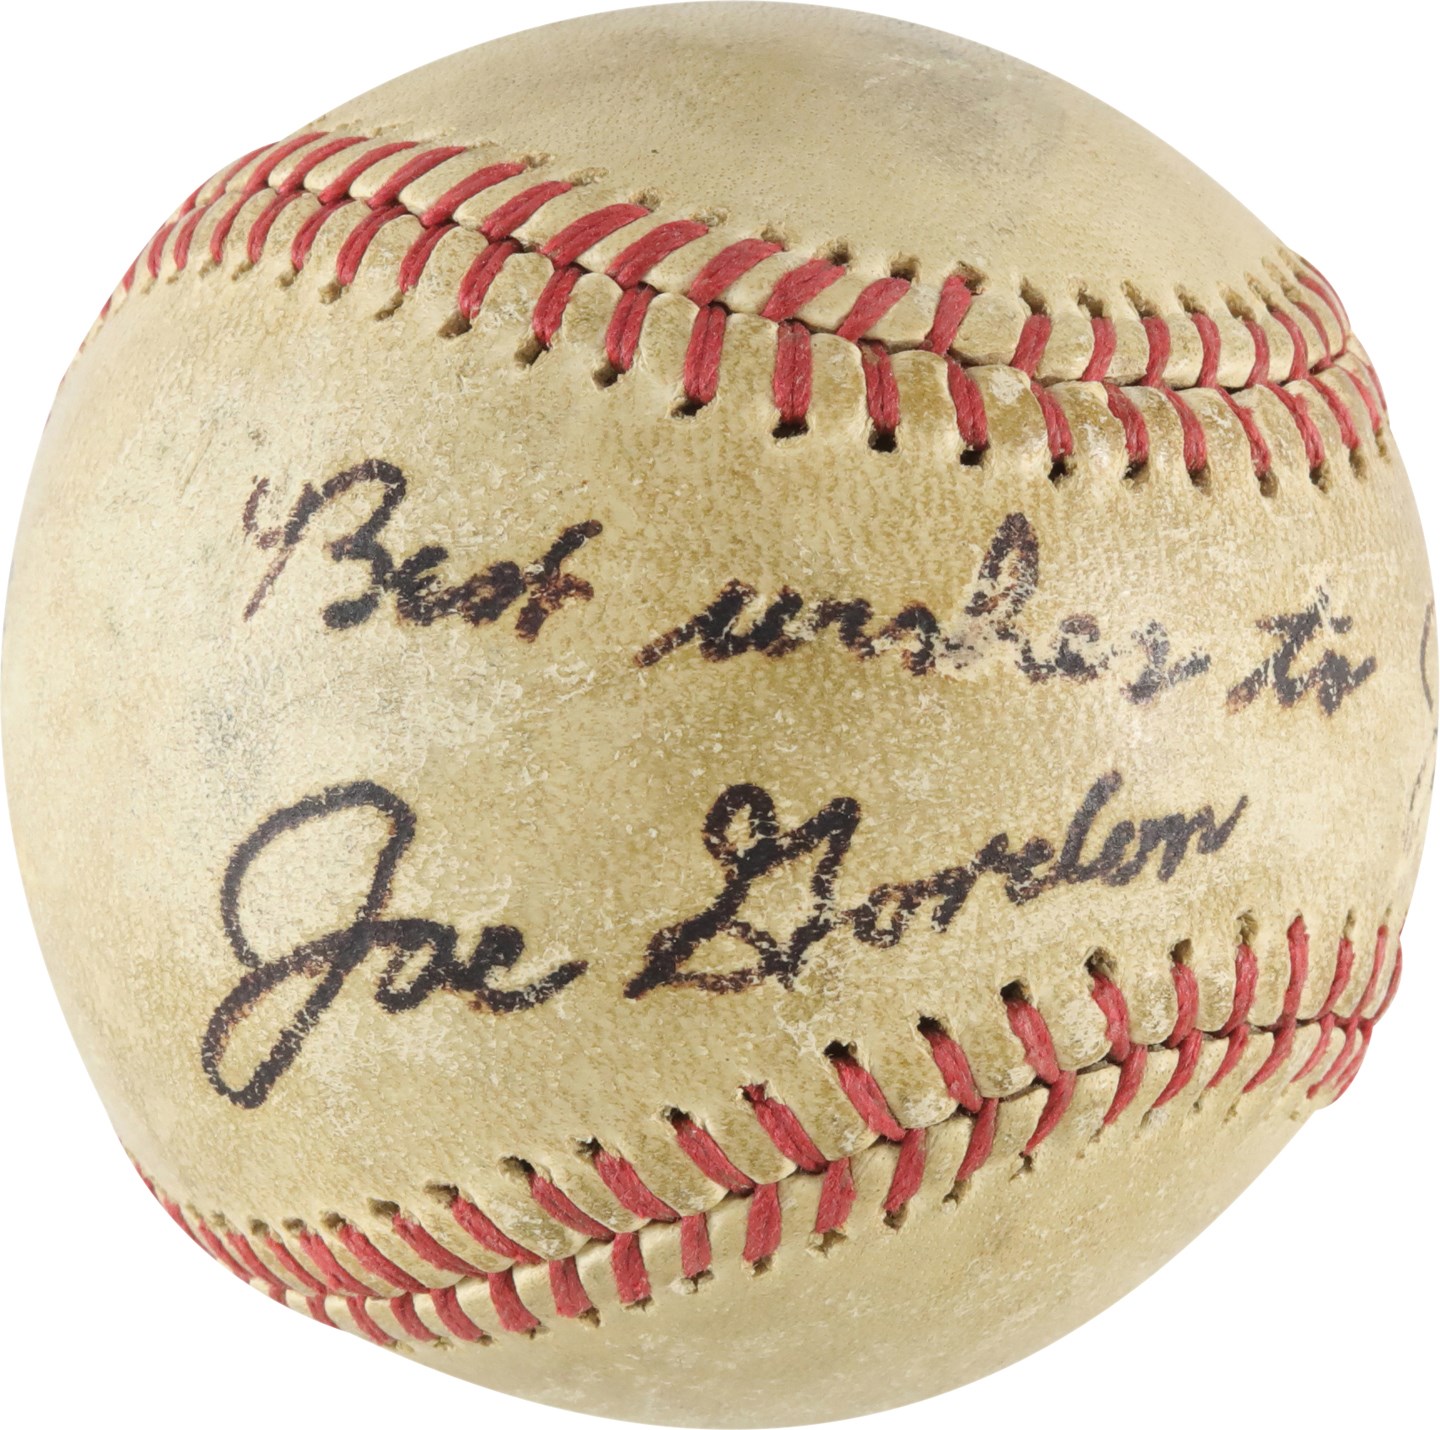 Baseball Autographs - Rare Joe Gordon Single-Signed Baseball (JSA)